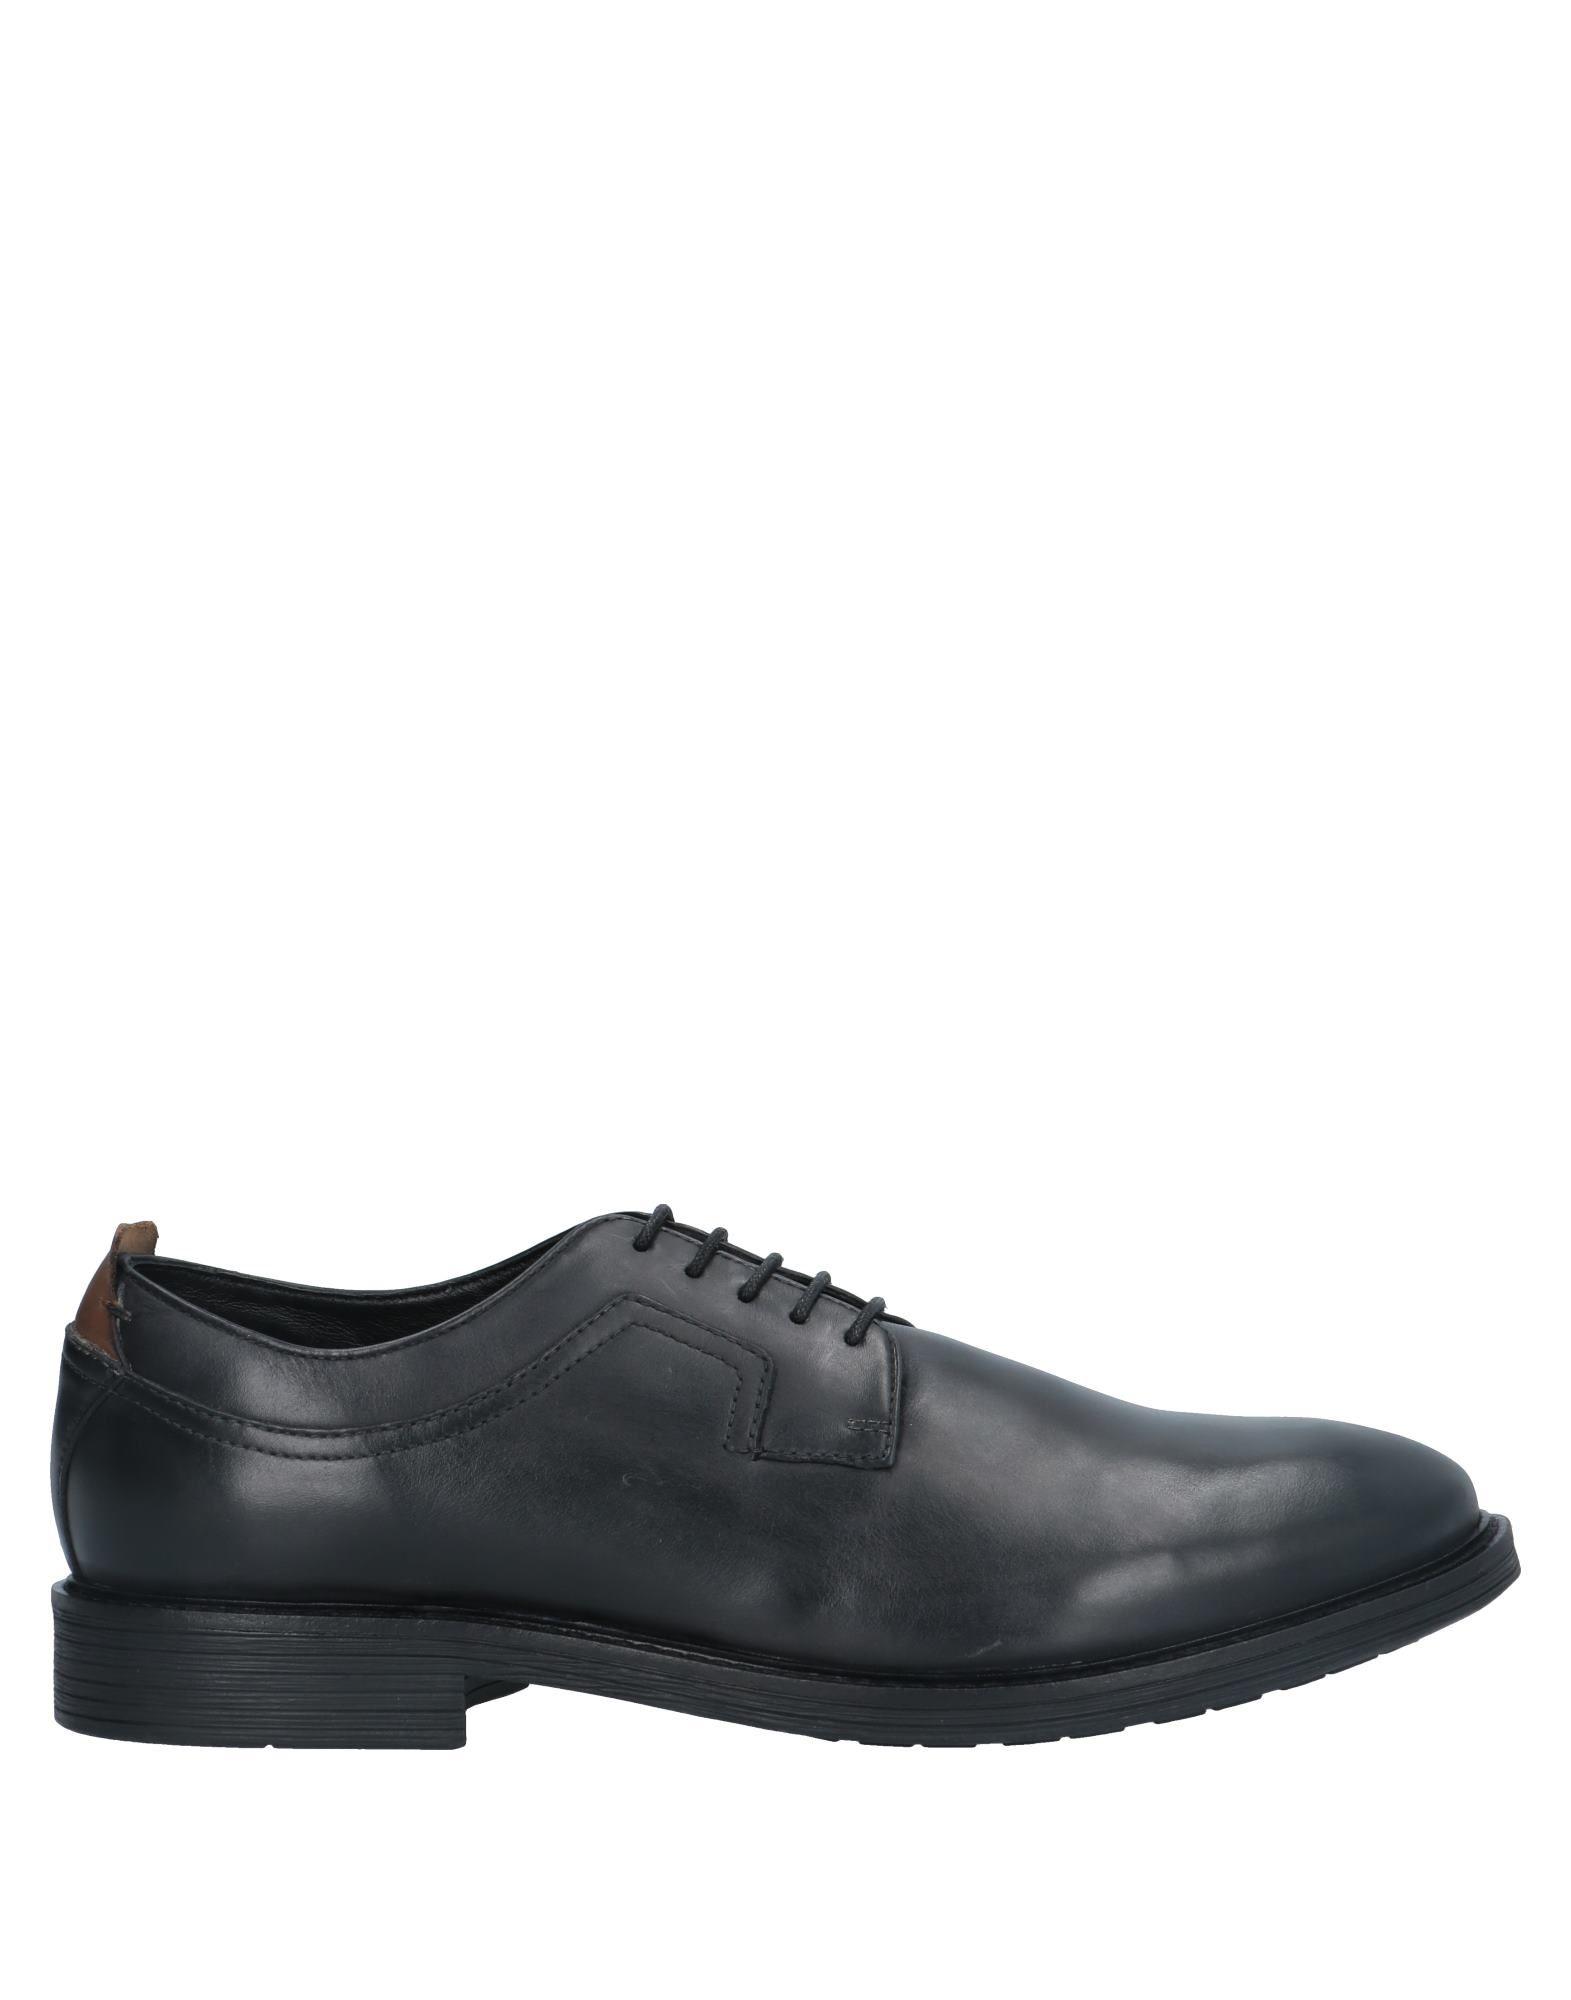 Lumberjack Lace-up Shoe in Black for Men - Lyst